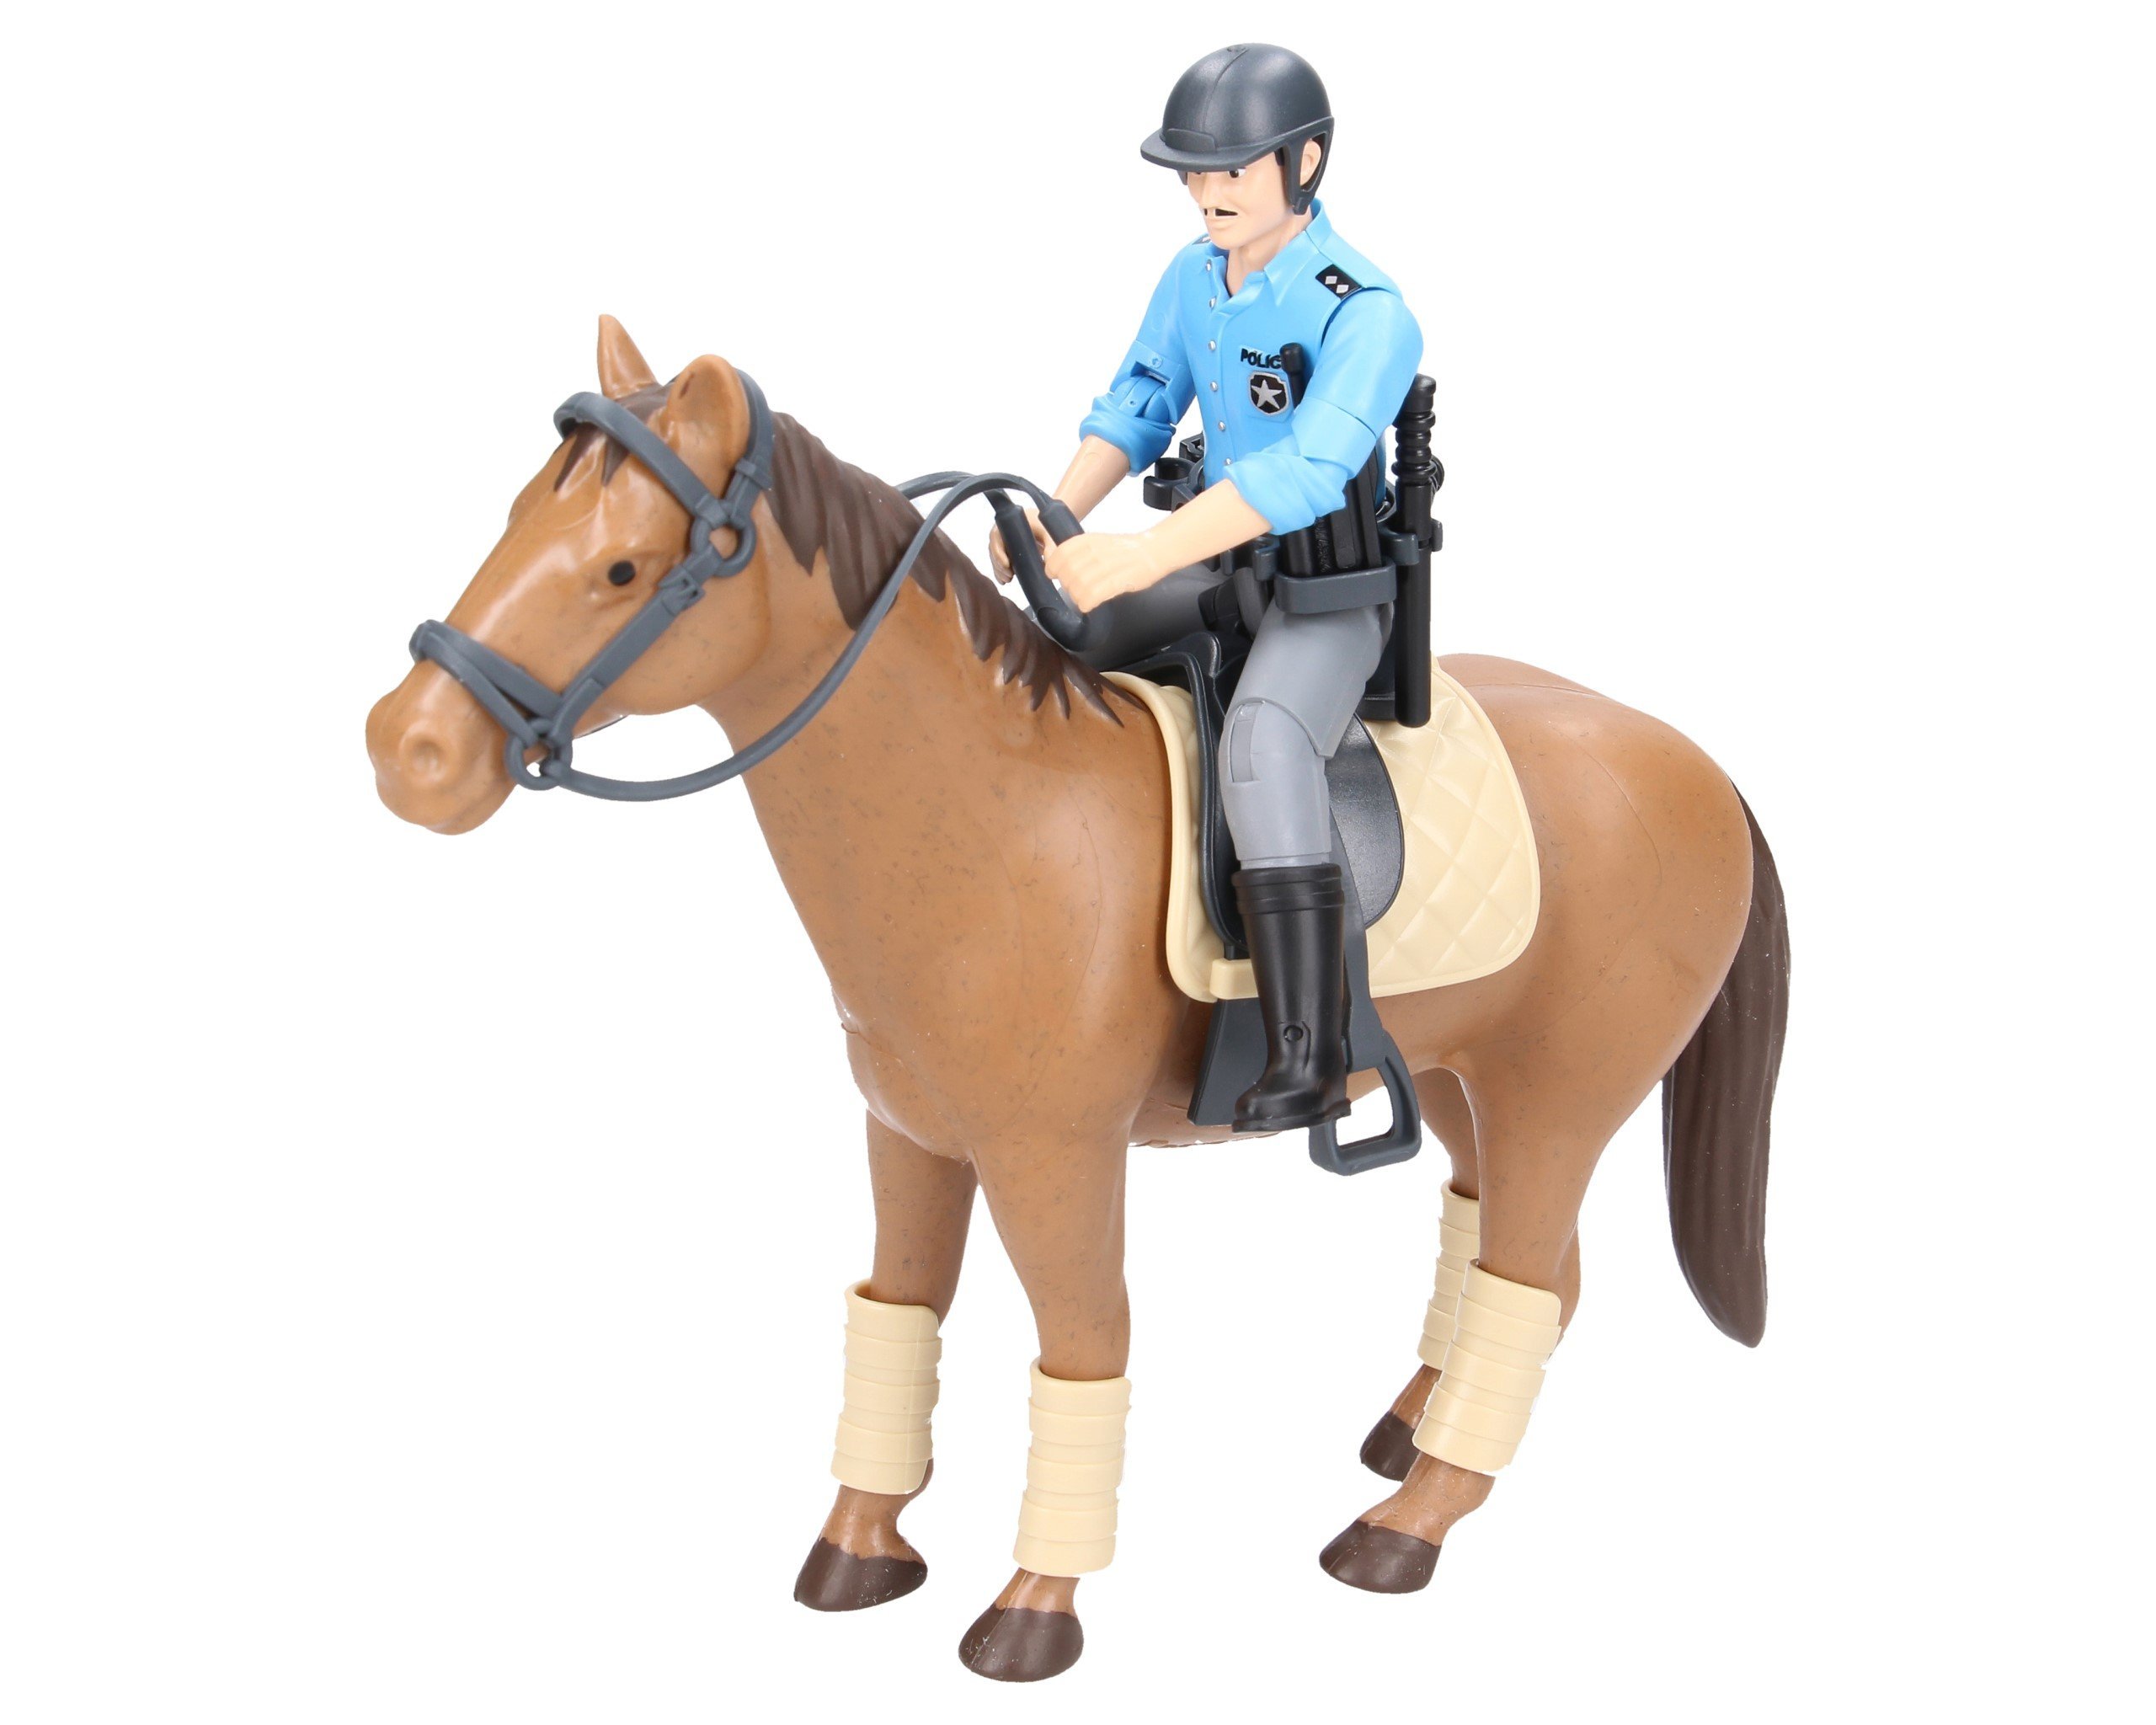 Bruder 62507 figurka policjanta z koniem i akcesoriami